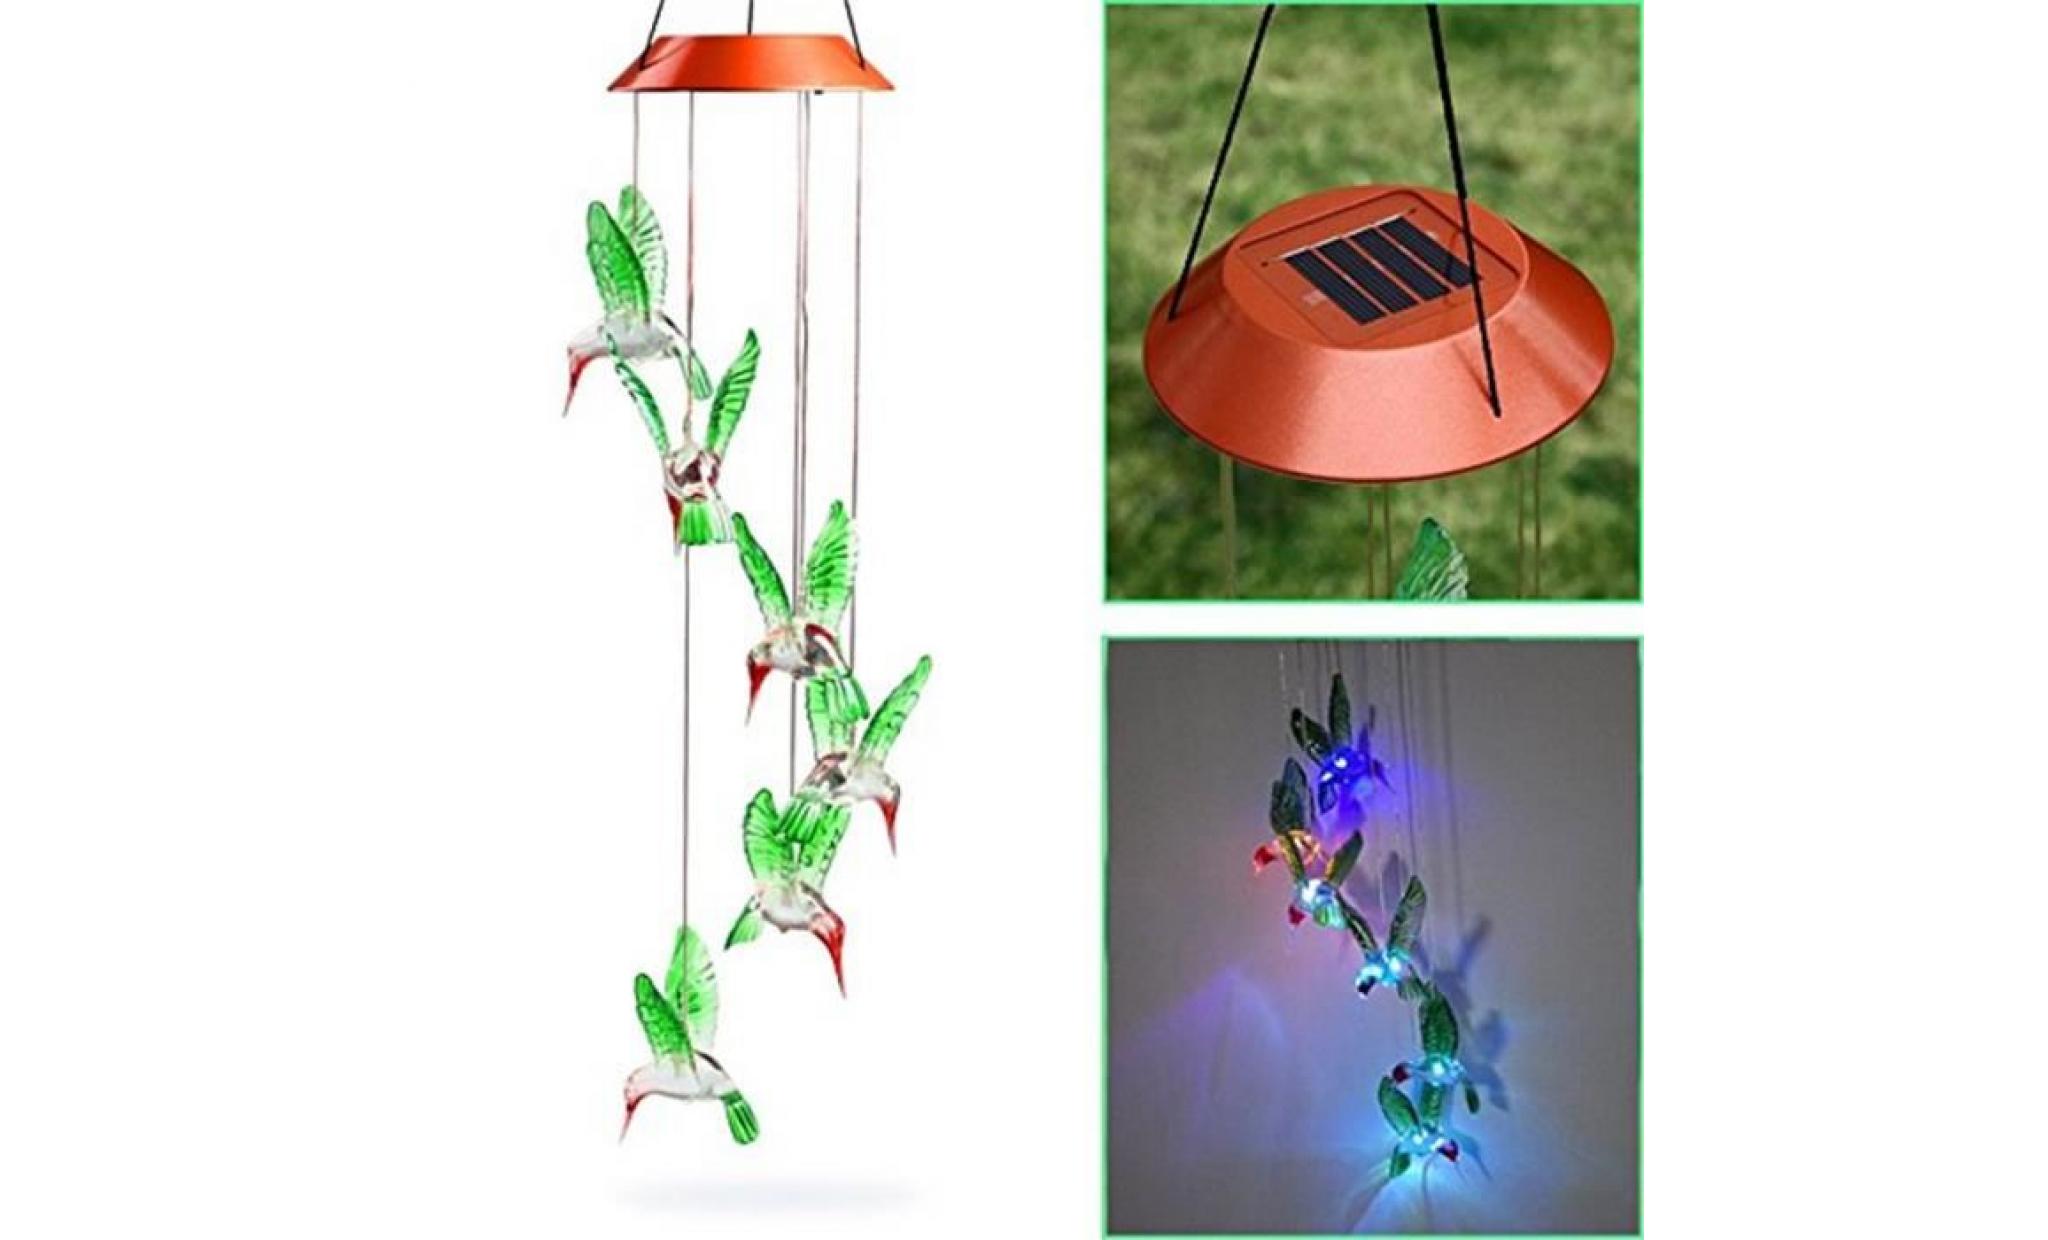 poi_couleur changeant le vent solaire de colibri de carillon de vent de led pour l'éclairage de jardinage591